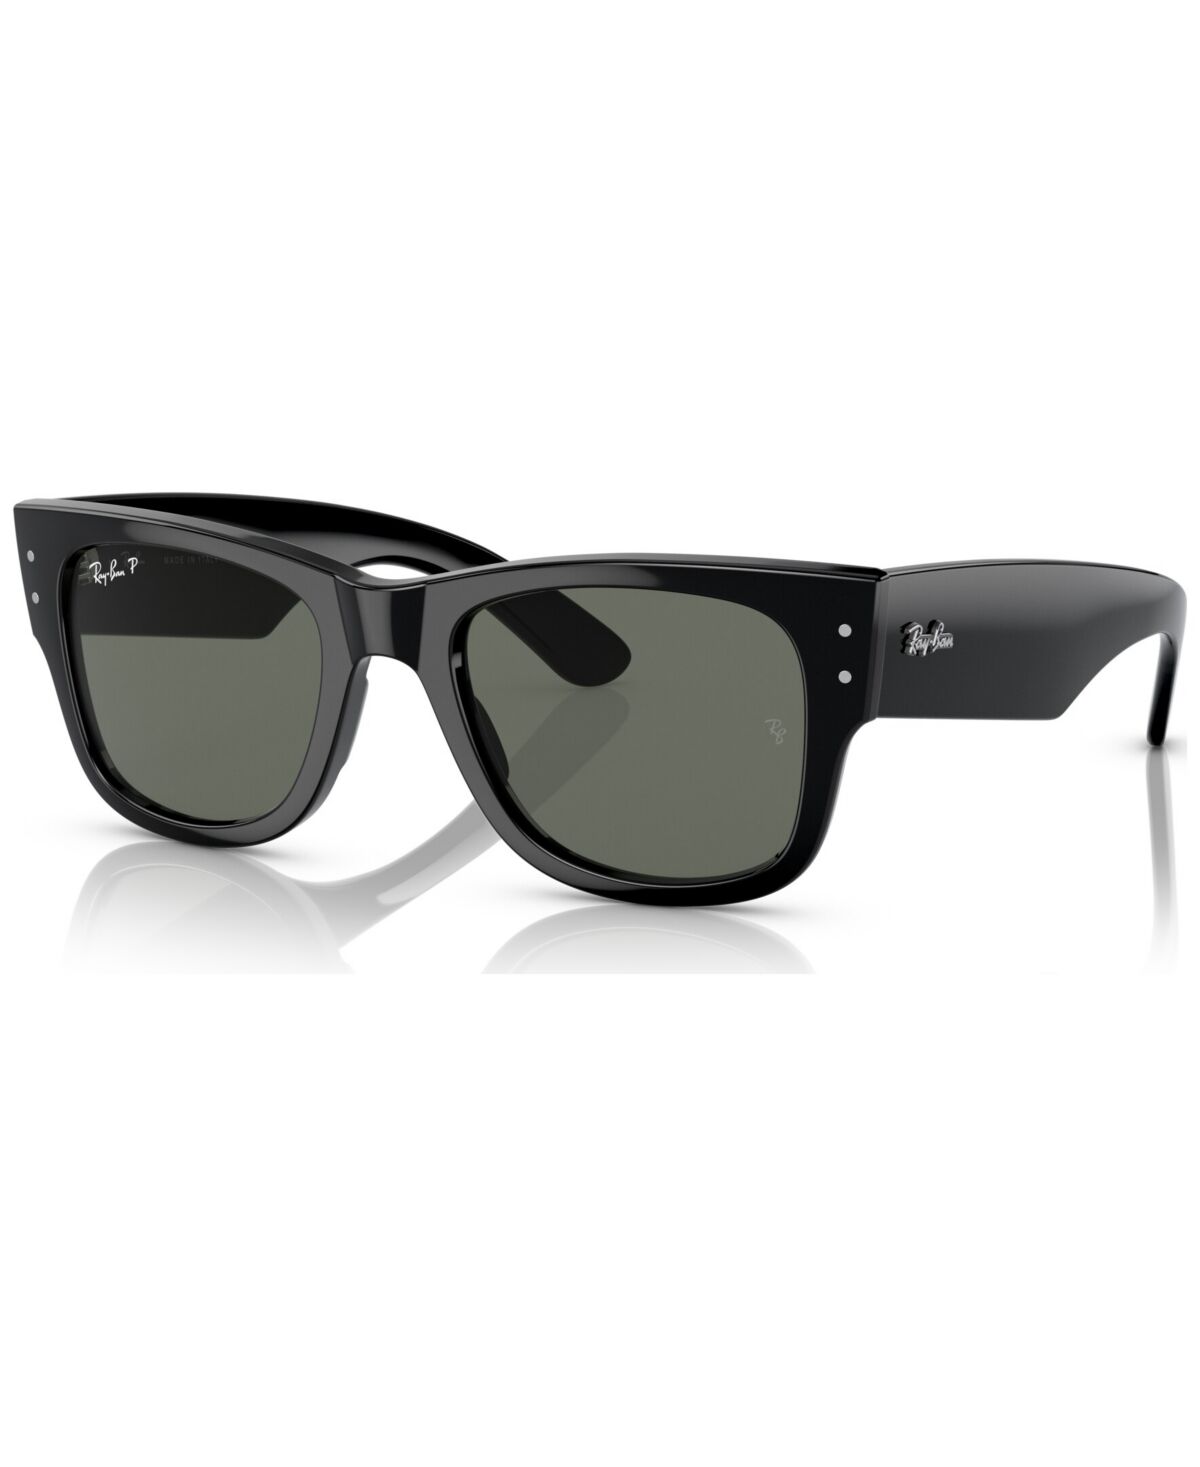 Ray-Ban Mega Wayfarer 51 Unisex Polarized Sunglasses - Black